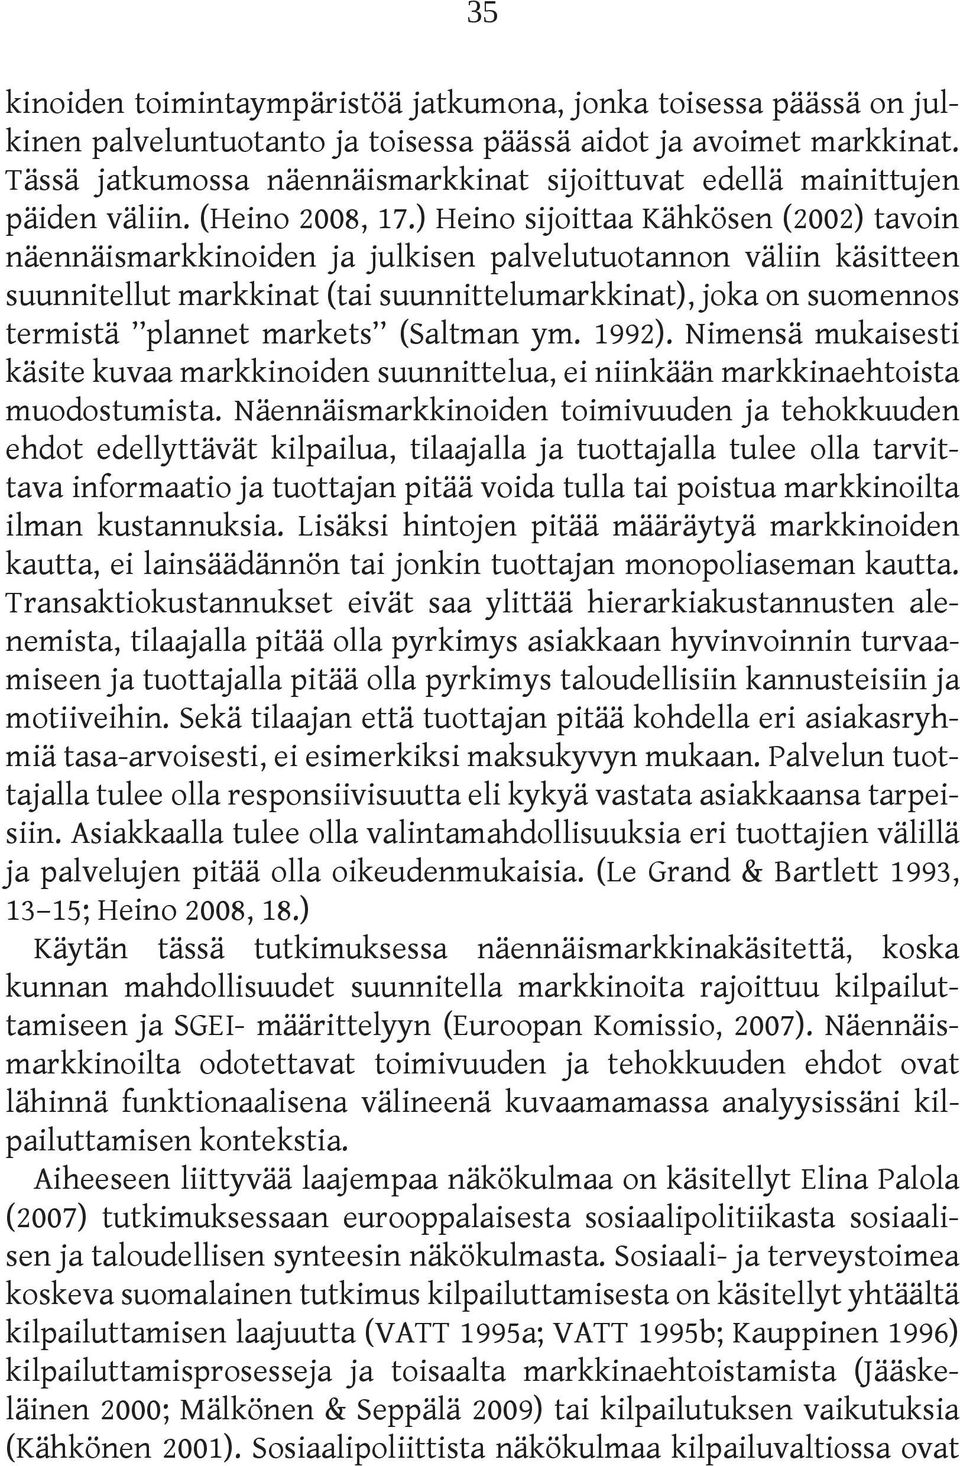 ) Heino sijoittaa Kähkösen (2002) tavoin näennäismarkkinoiden ja julkisen palvelutuotannon väliin käsitteen suunnitellut markkinat (tai suunnittelumarkkinat), joka on suomennos termistä plannet